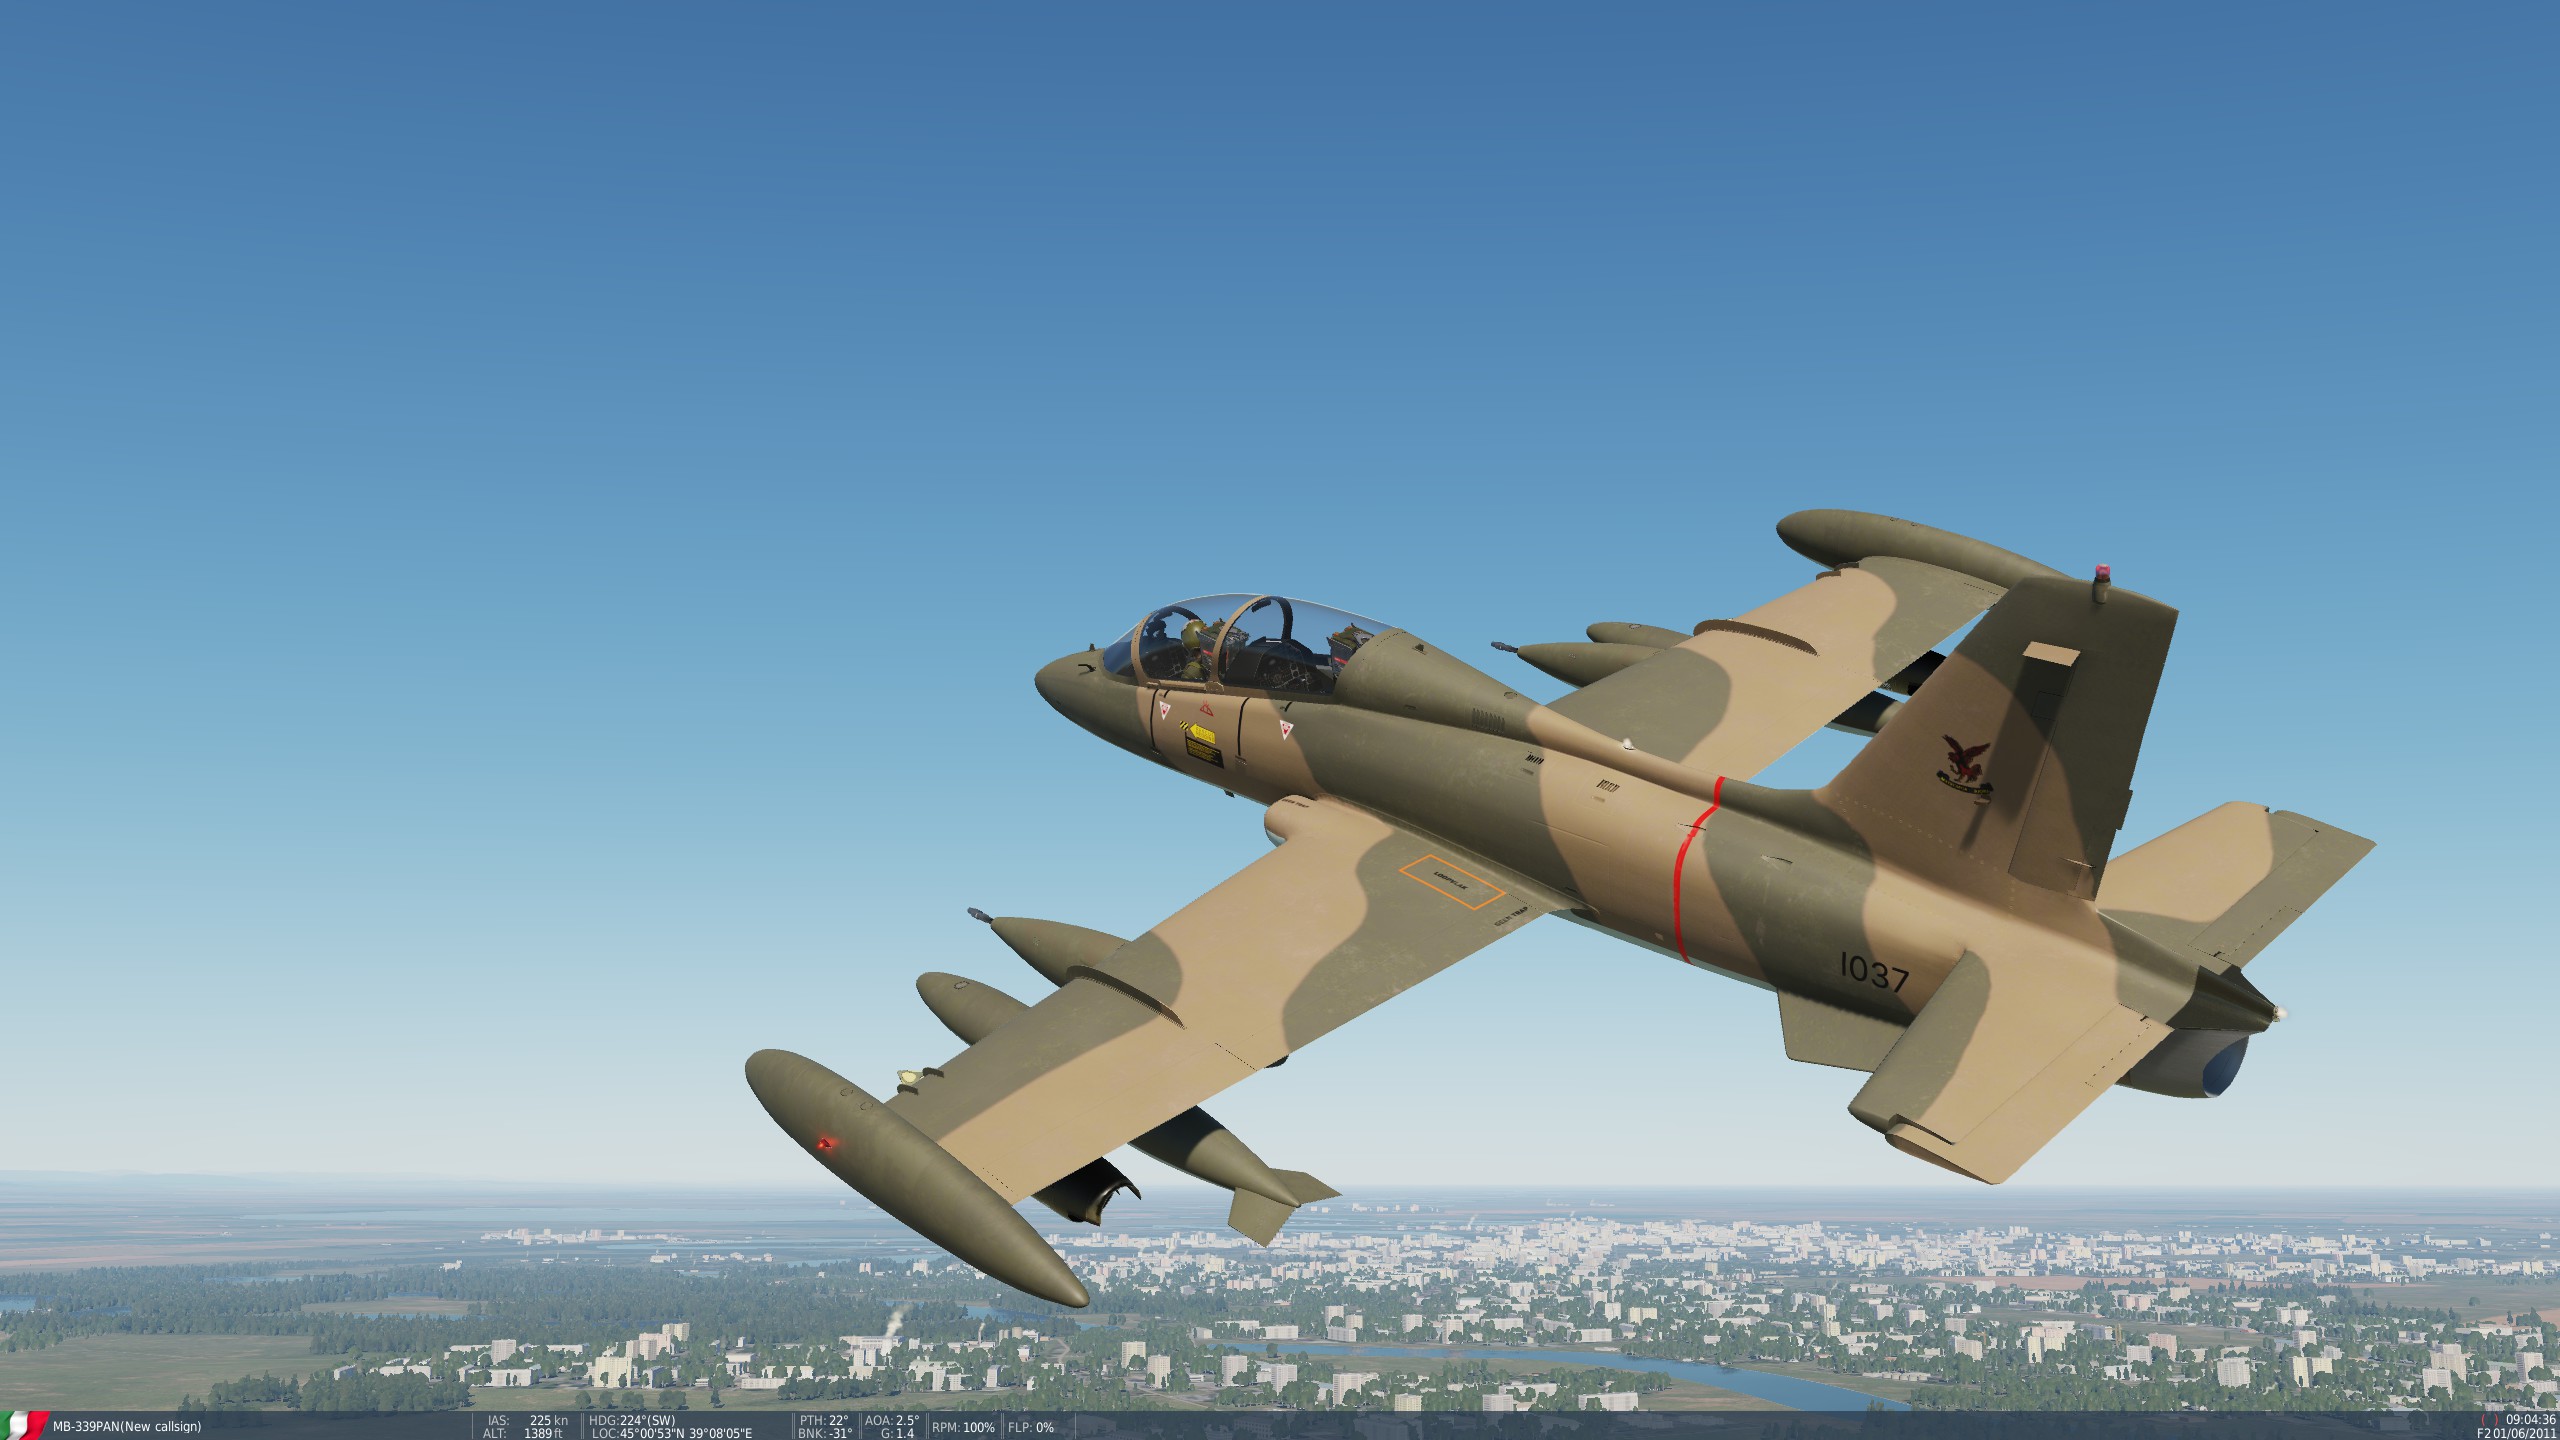 Aermacchi MB-339 SAAF 8 Squadron "Impala"